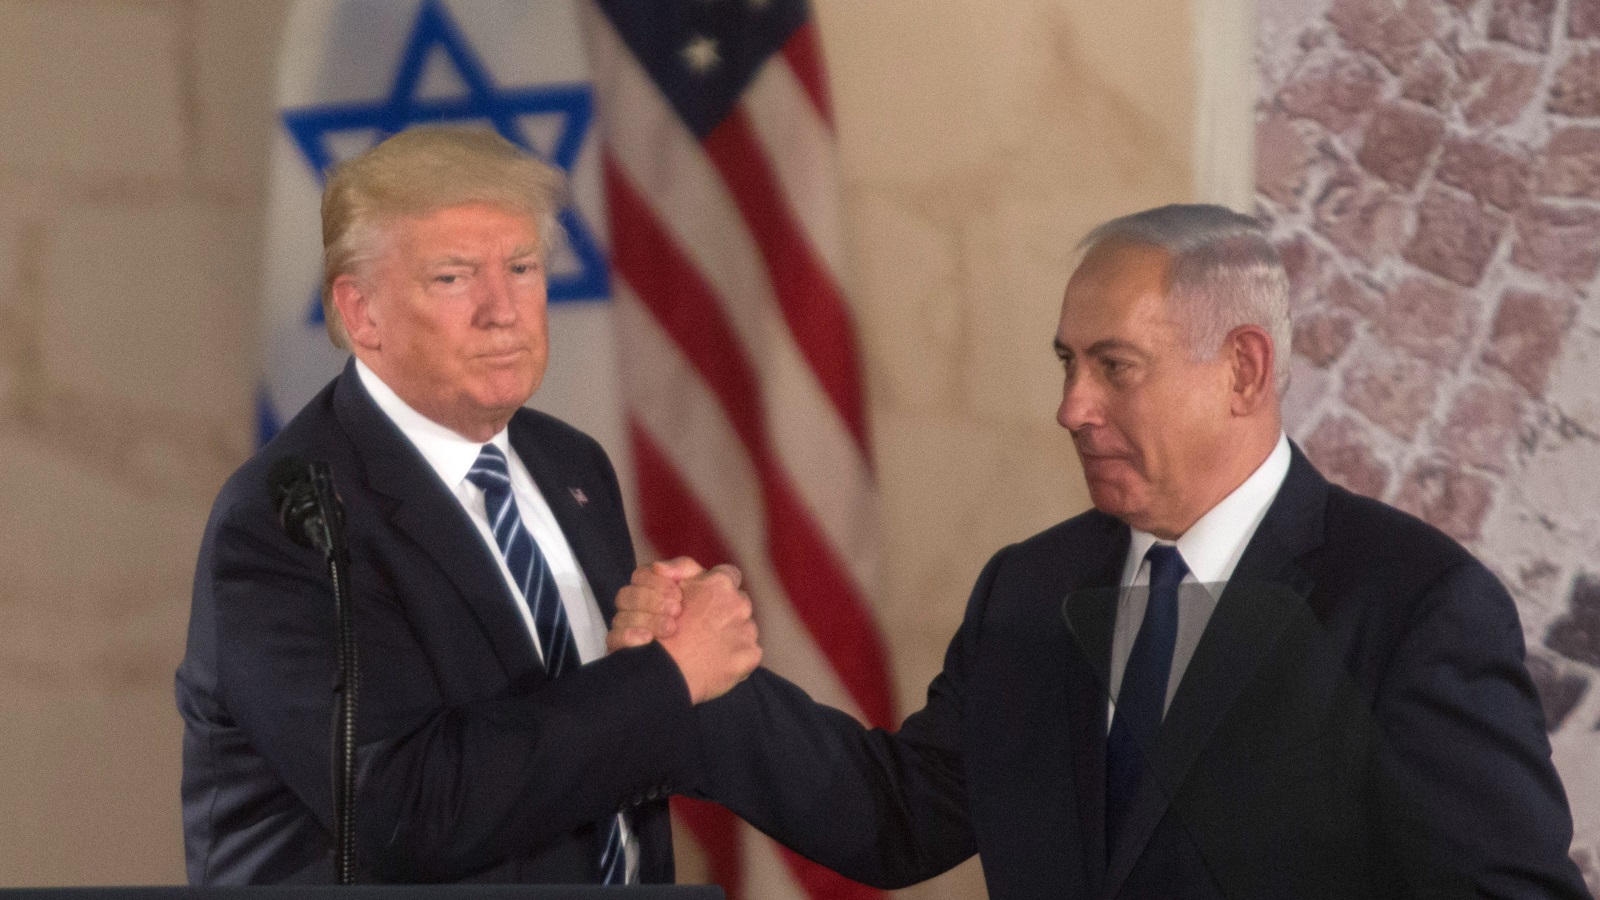 نتنياهو يرى في وصول ترمب لرئاسة أميركا فرصة سانحة لتحقيق أمانيه في القدس وفلسطين (غيتي)